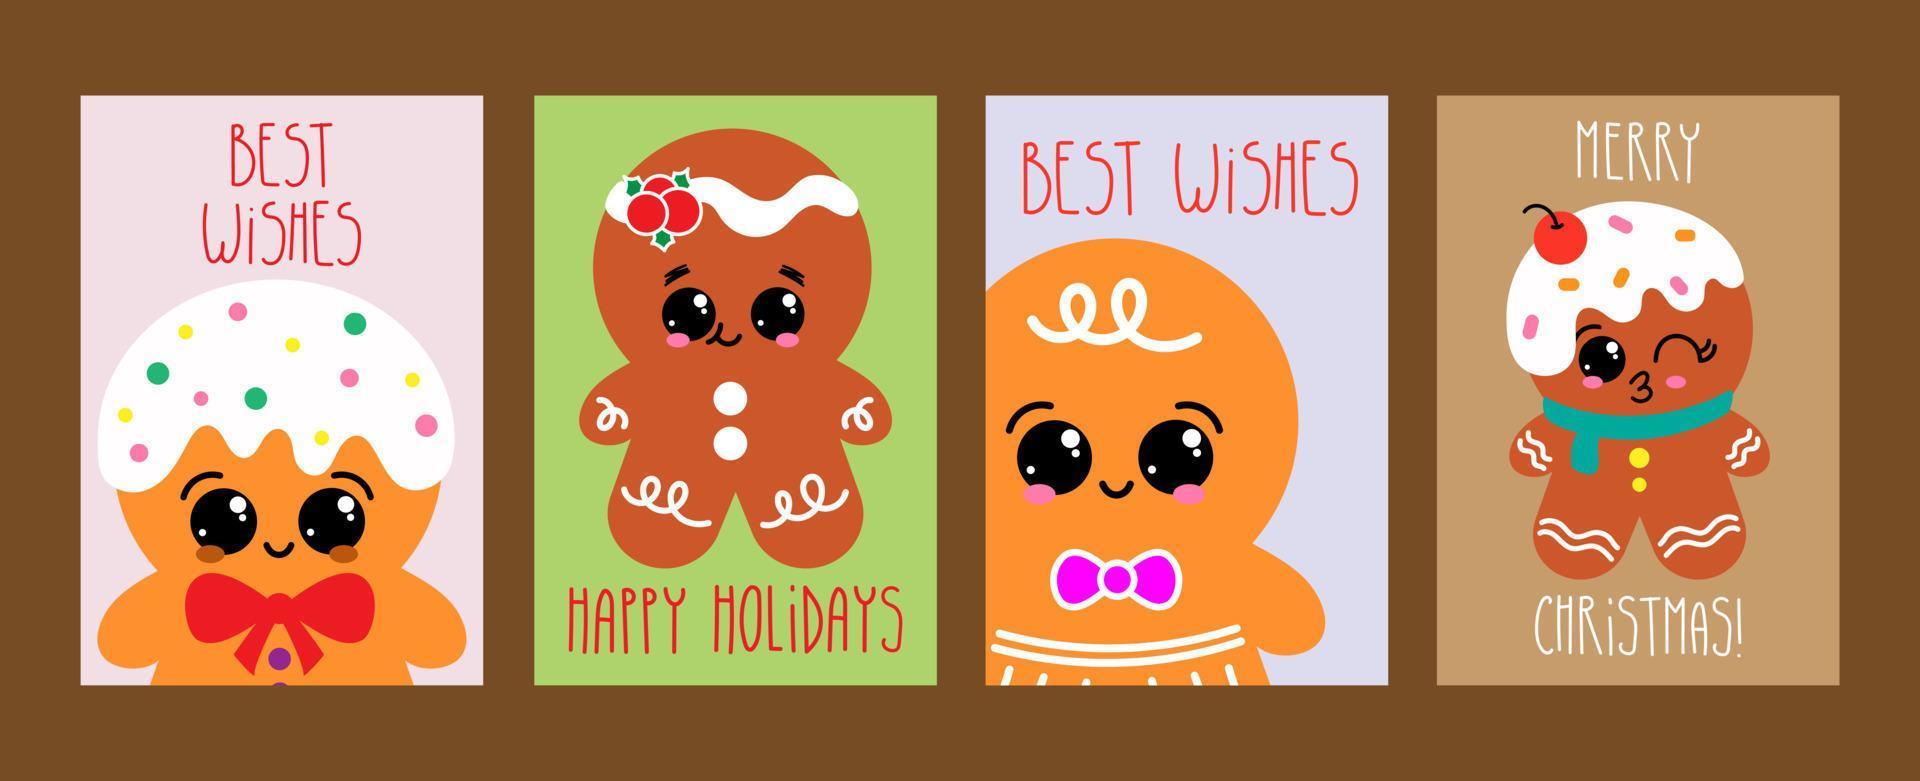 sammlung von weihnachtskarten mit lebkuchen und handbeschriftung. süße lebkuchenplätzchen, winterbacken vektor